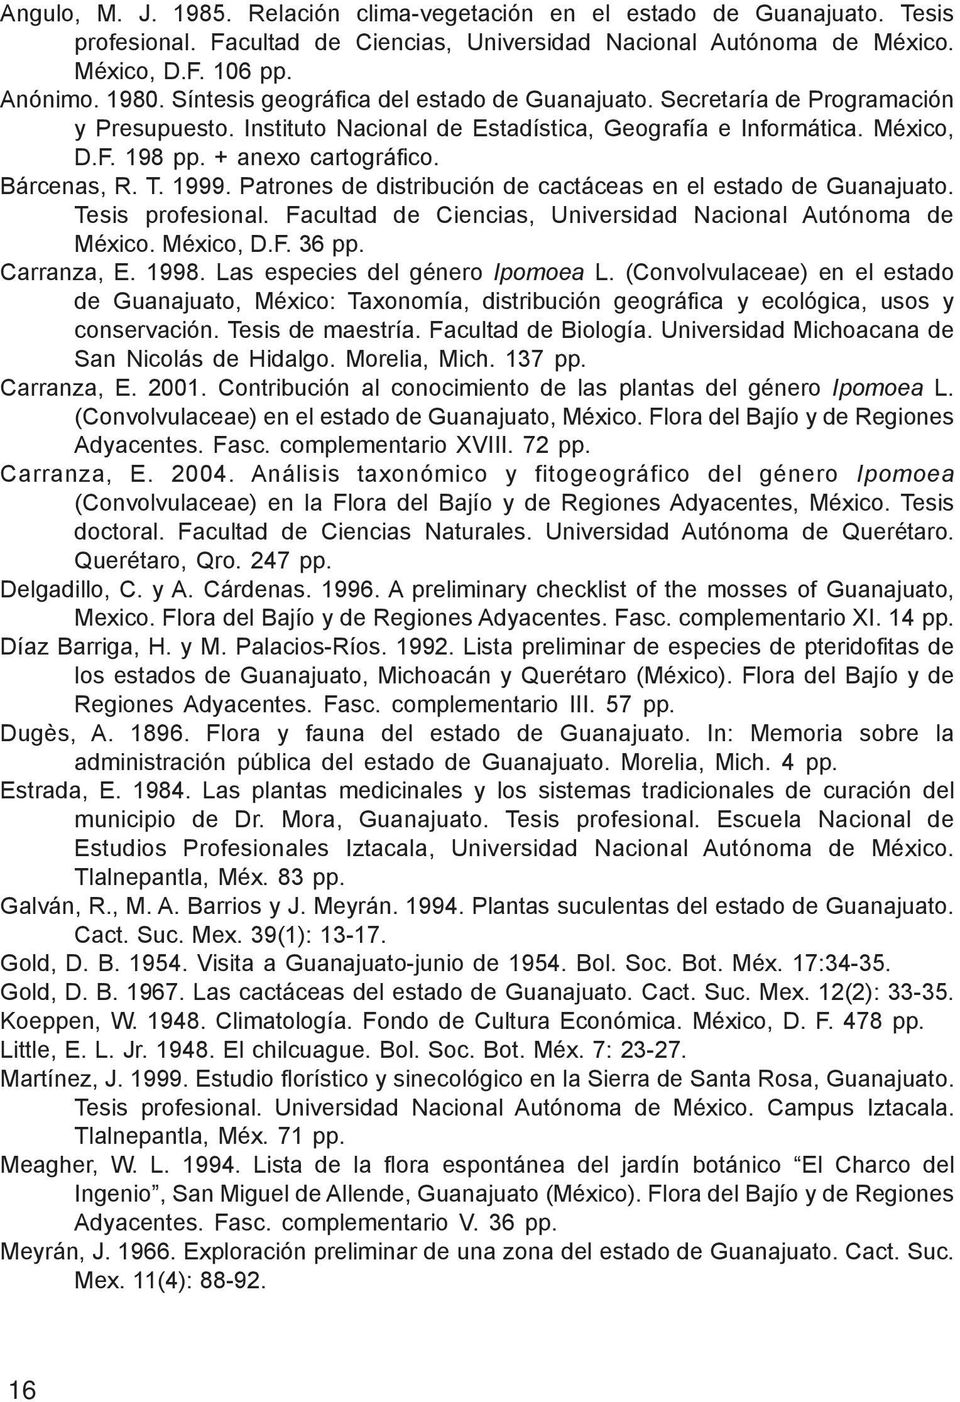 Bárcenas, R. T. 1999. Patrones de distribución de cactáceas en el estado de Guanajuato. Tesis profesional. Facultad de Ciencias, Universidad Nacional Autónoma de México. México, D.F. 36 pp.